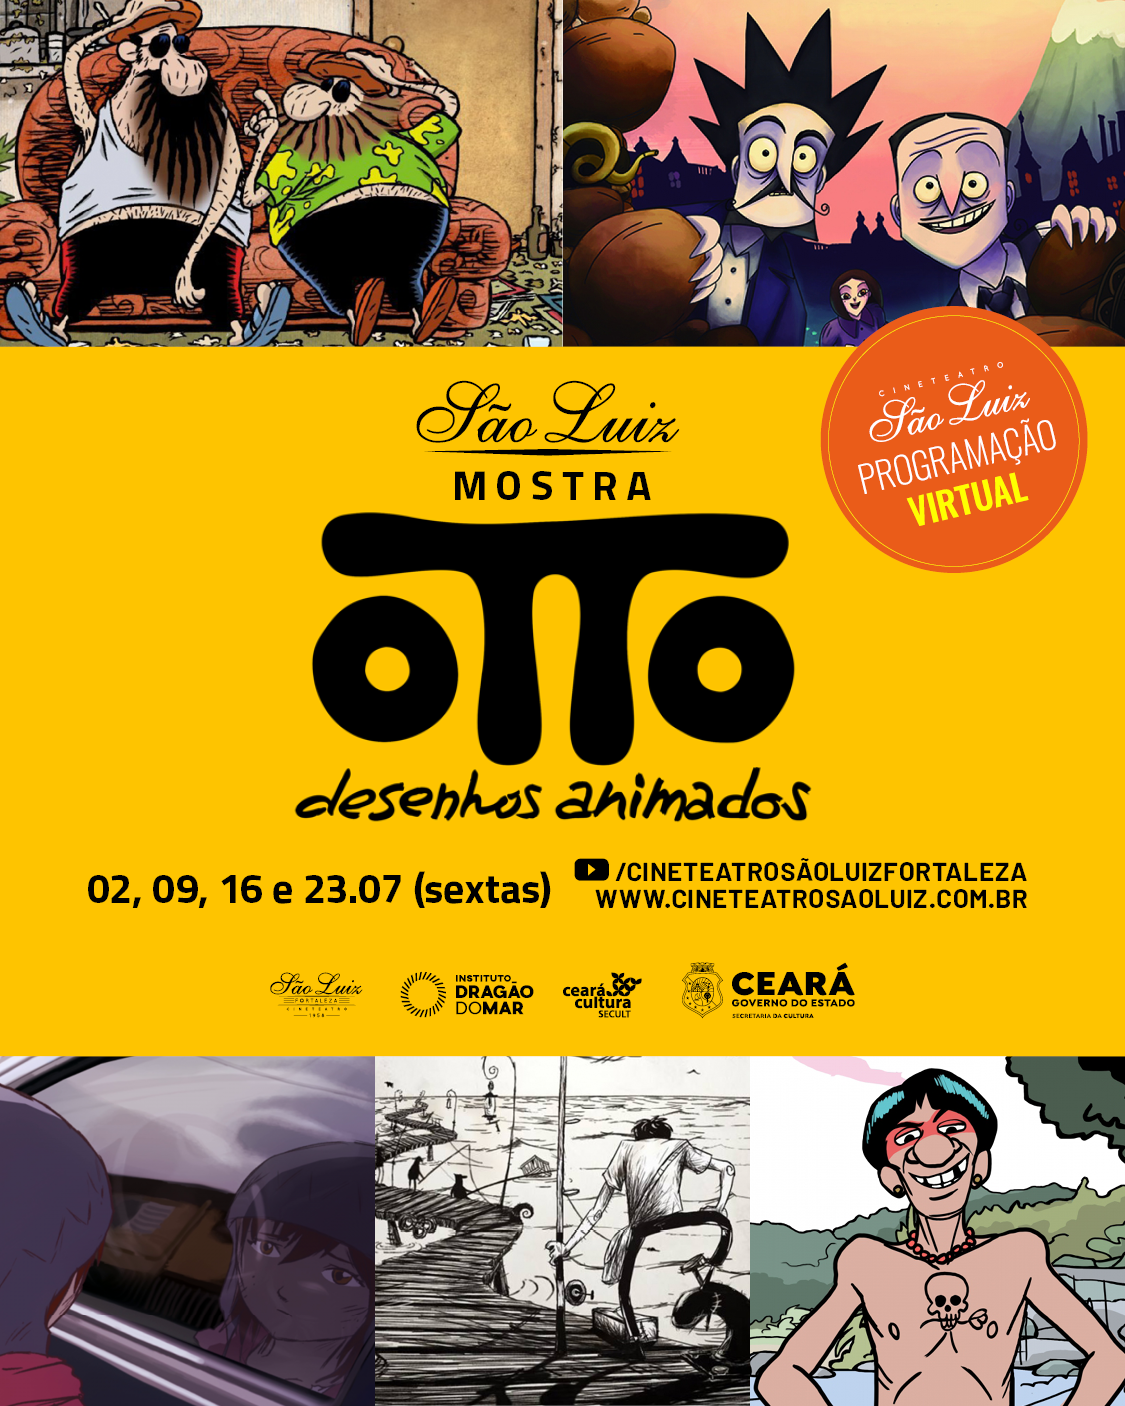 Programação virtual do Cineteatro São Luiz coloca em cartaz a Mostra  Especial “Otto Desenhos Animados” - Governo do Estado do Ceará